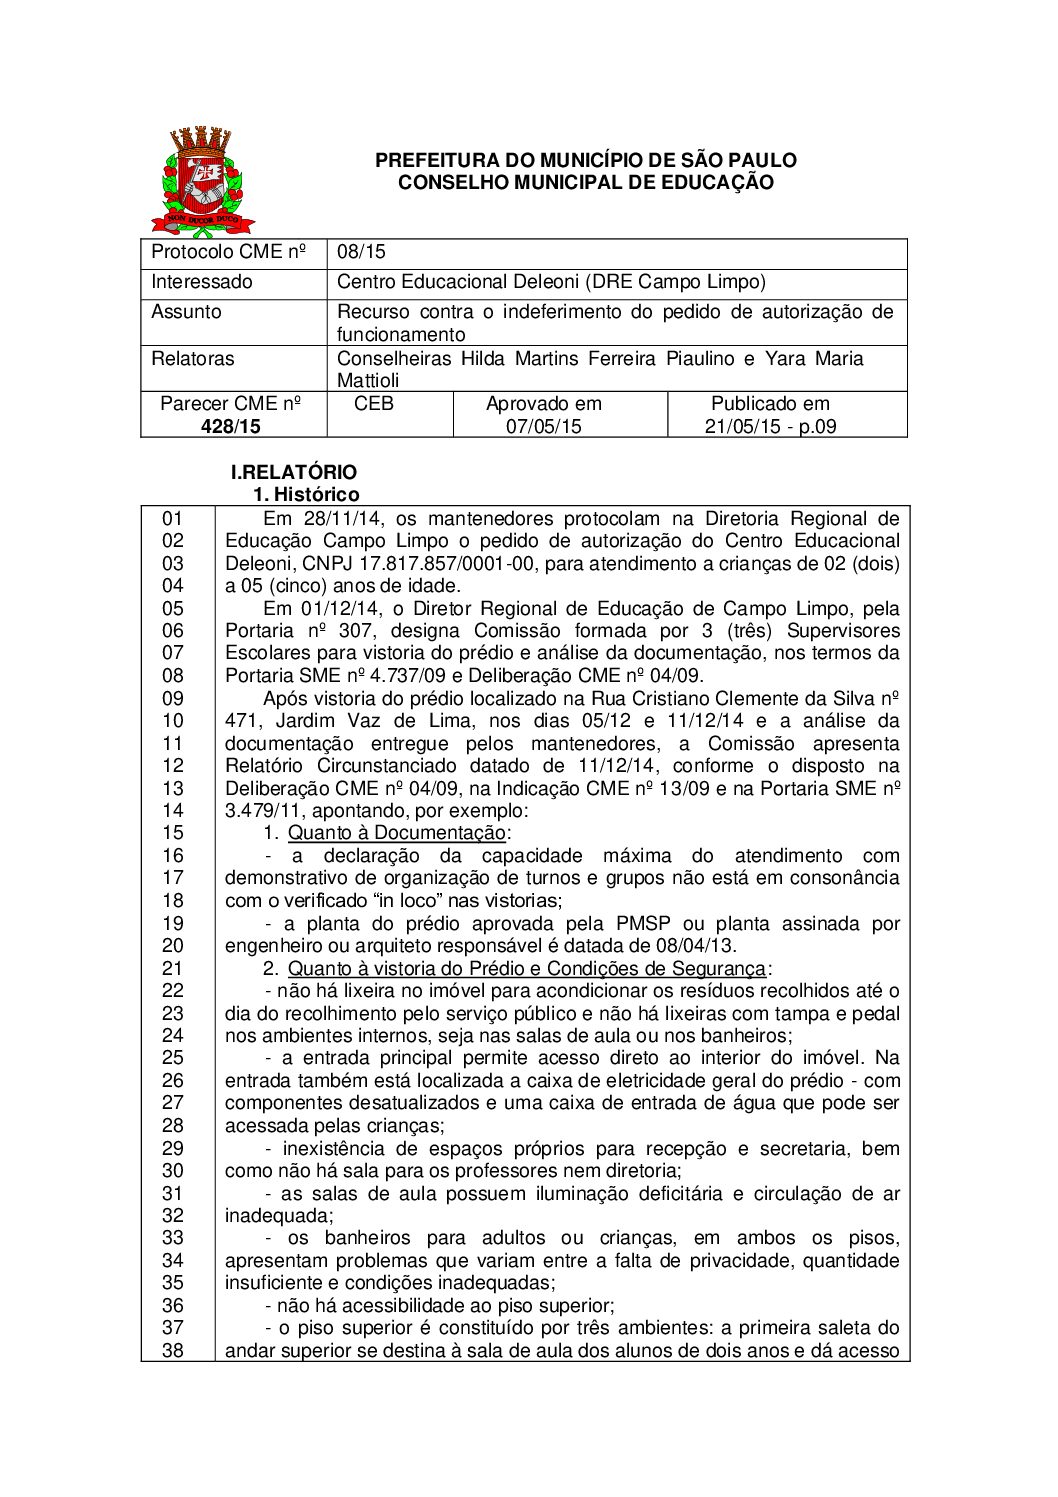 Parecer CME nº 428/2015 - Centro Educacional Deleoni (DRE Campo Limpo) - Recurso contra o indeferimento do pedido de autorização de funcionamento 